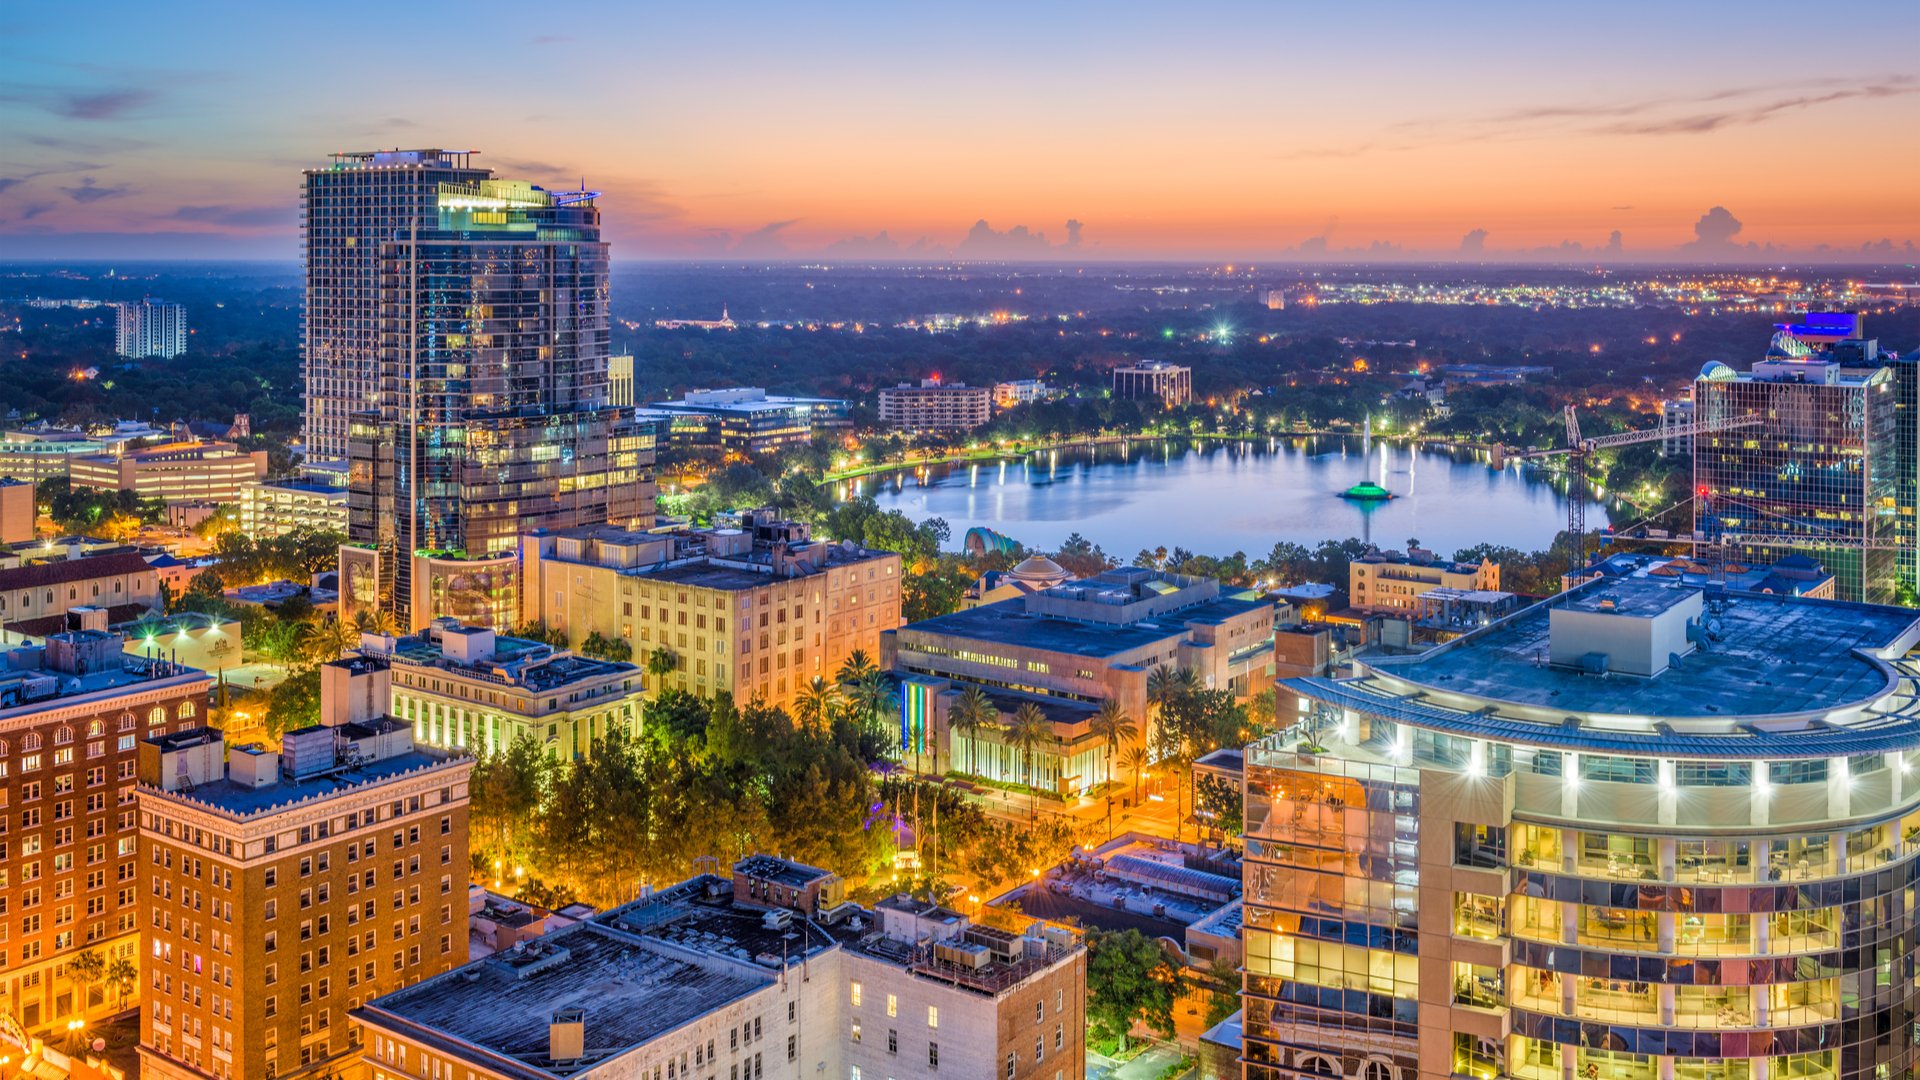 O que fazer em Orlando: pontos turísticos e passeios | Downtown Orlando | Conexão123